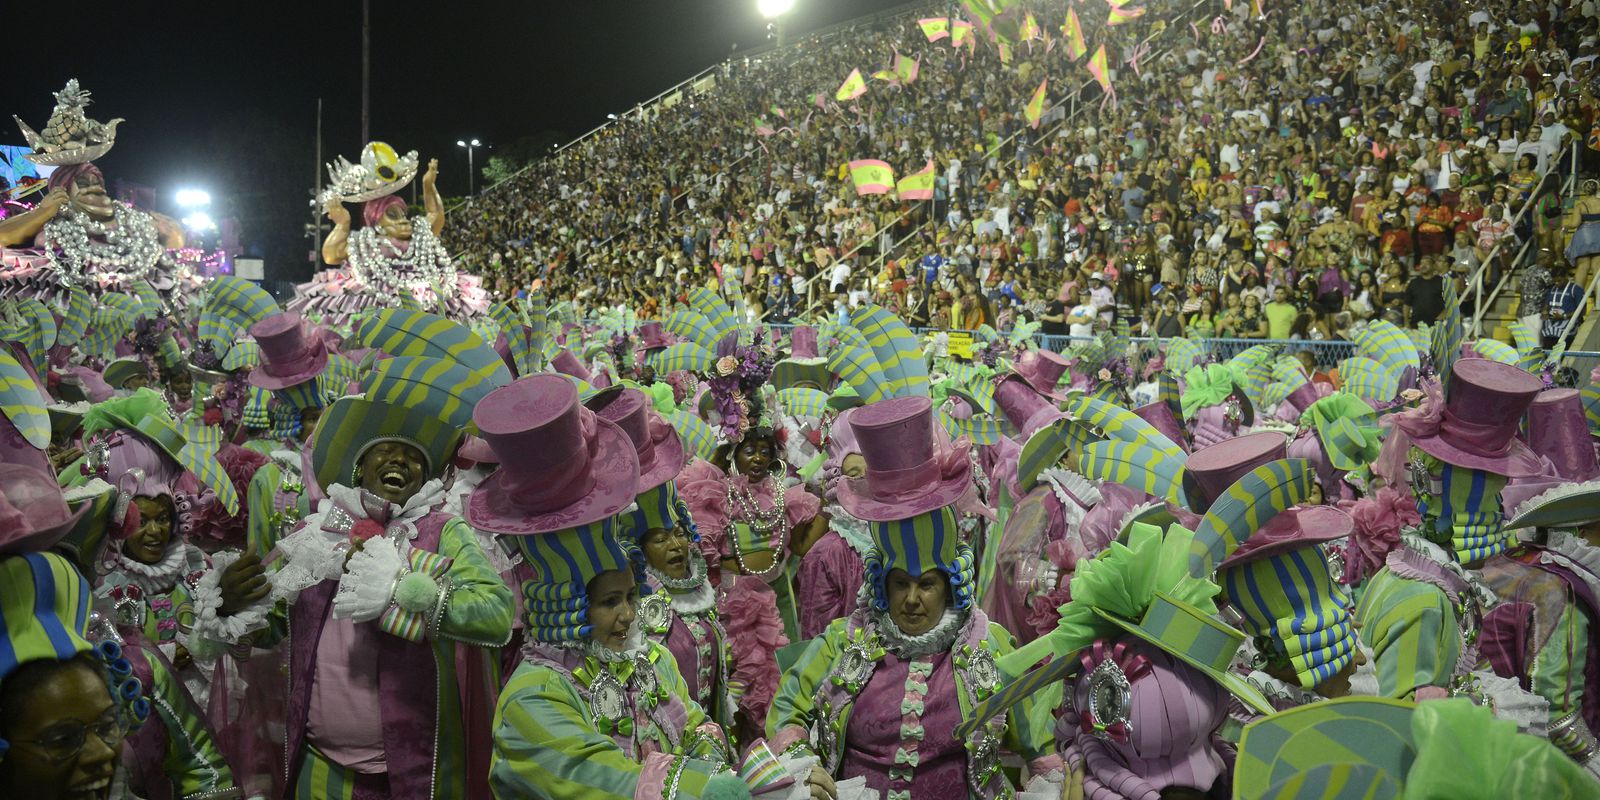 Carnaval: Riotur deve apresentar exigências para ensaios técnicos